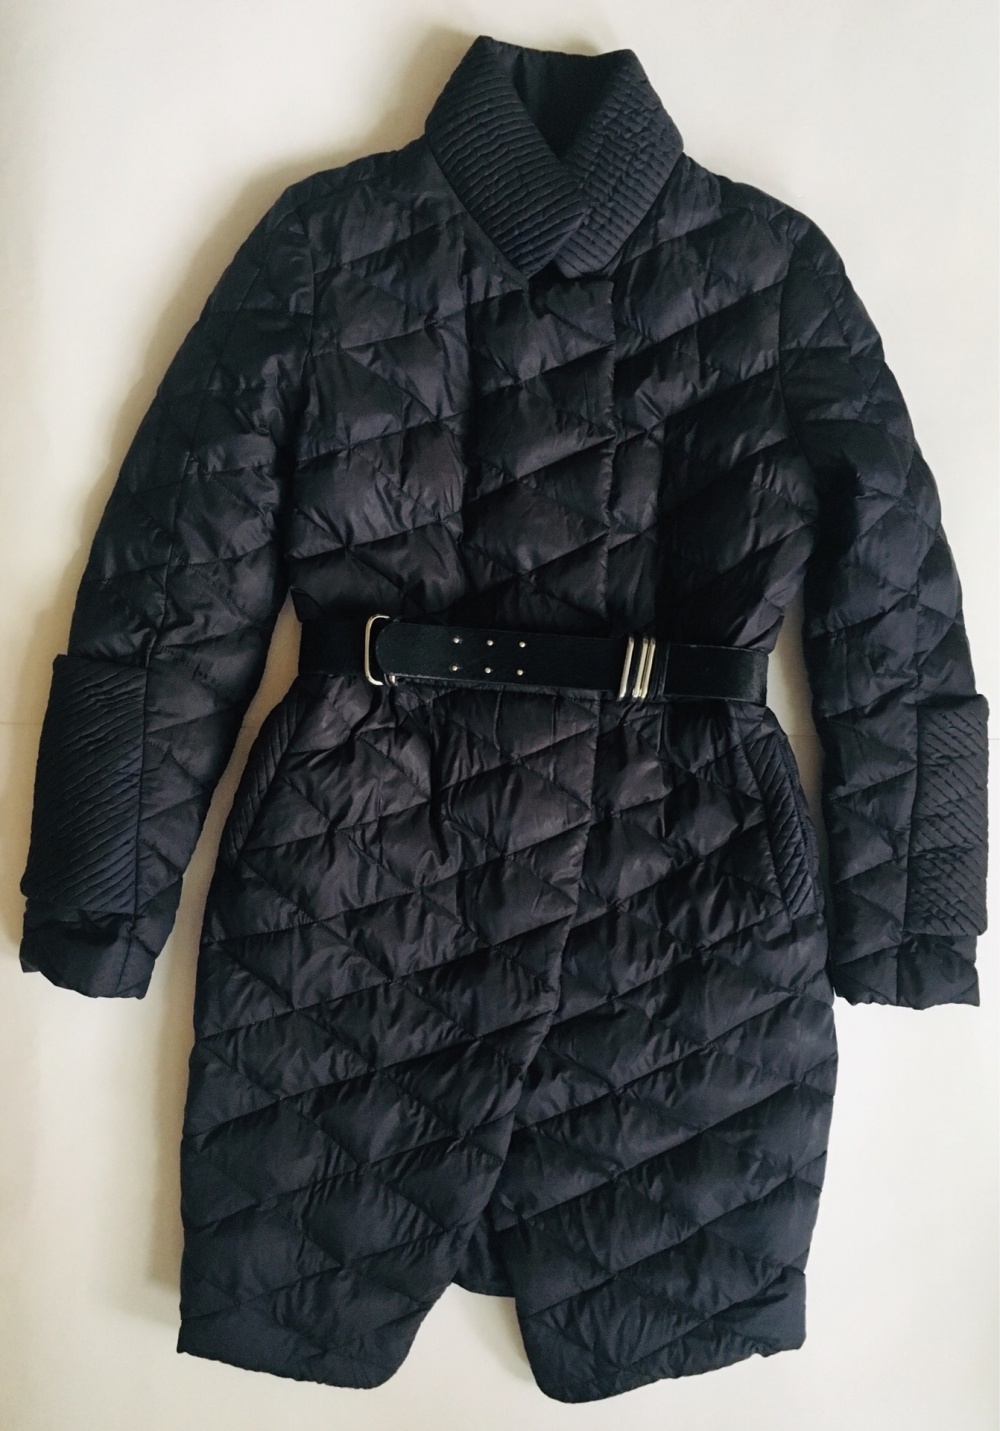 Пальто ODRI, 42-44 размеры